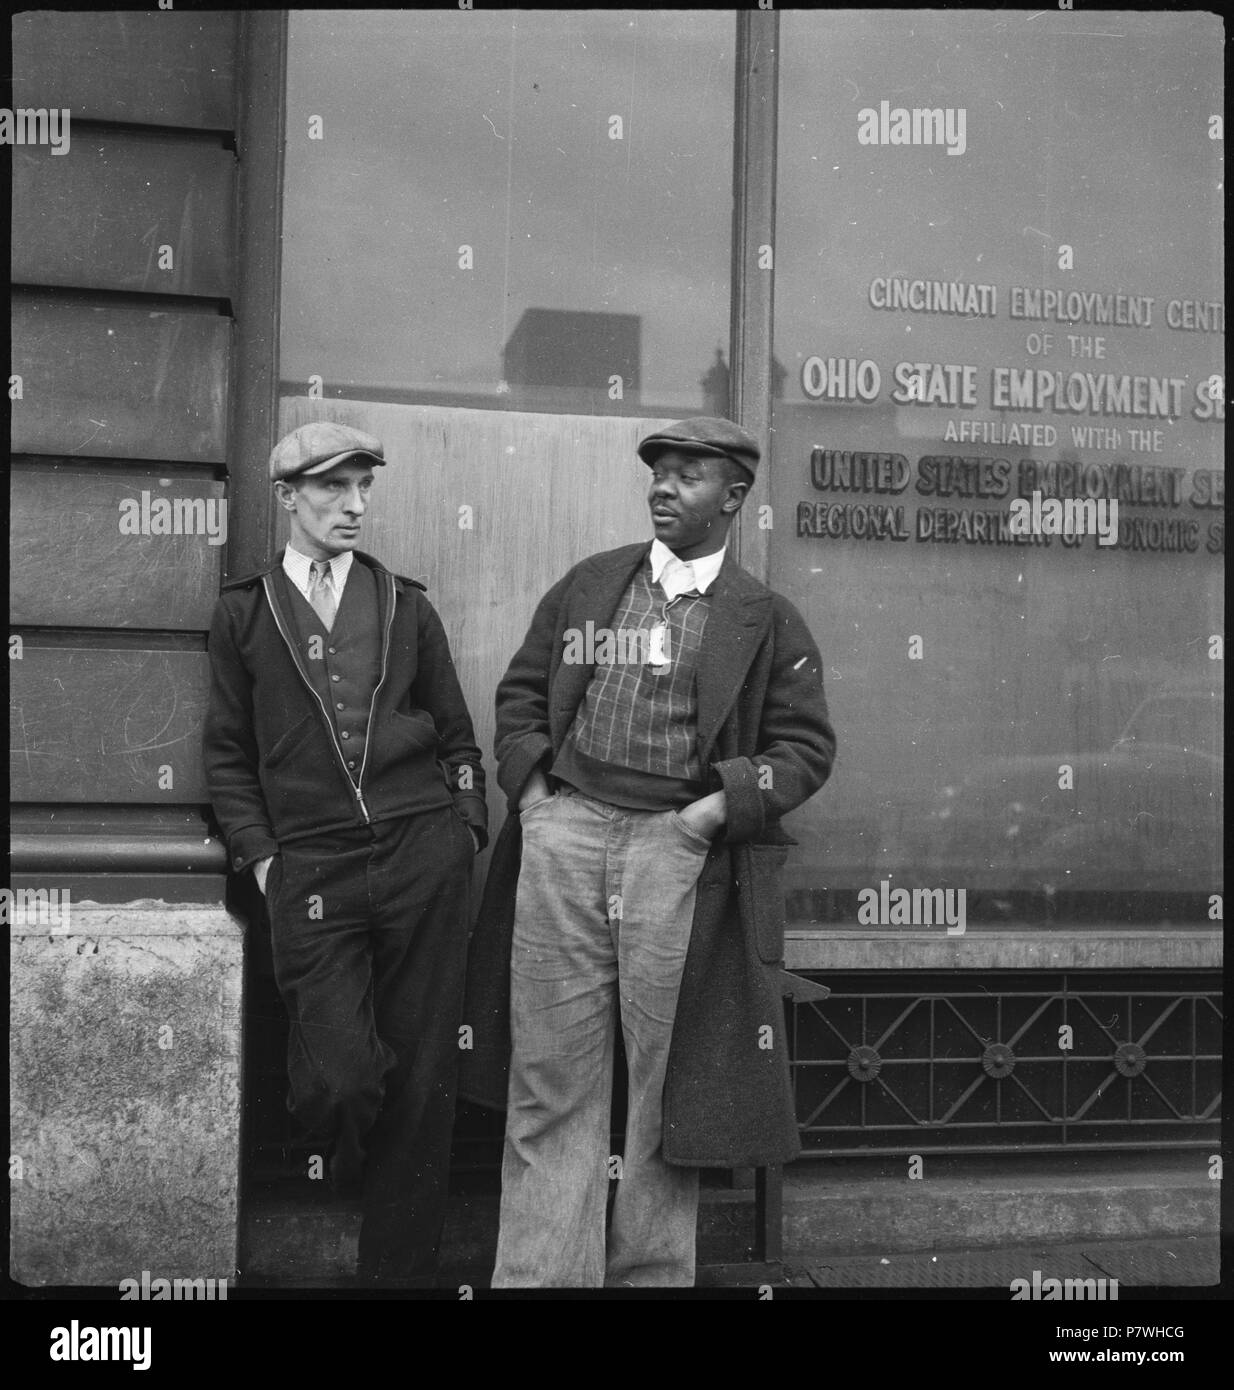 Stati Uniti d'America, Cincinnati/OH: Menschen; Zwei Männer lehnen un einer Hauswand. Febbraio 1938 85 CH-NB - USA, Cincinnati-OH- Menschen - Annemarie Schwarzenbach - SLA-Schwarzenbach-UN-5-10-086 Foto Stock